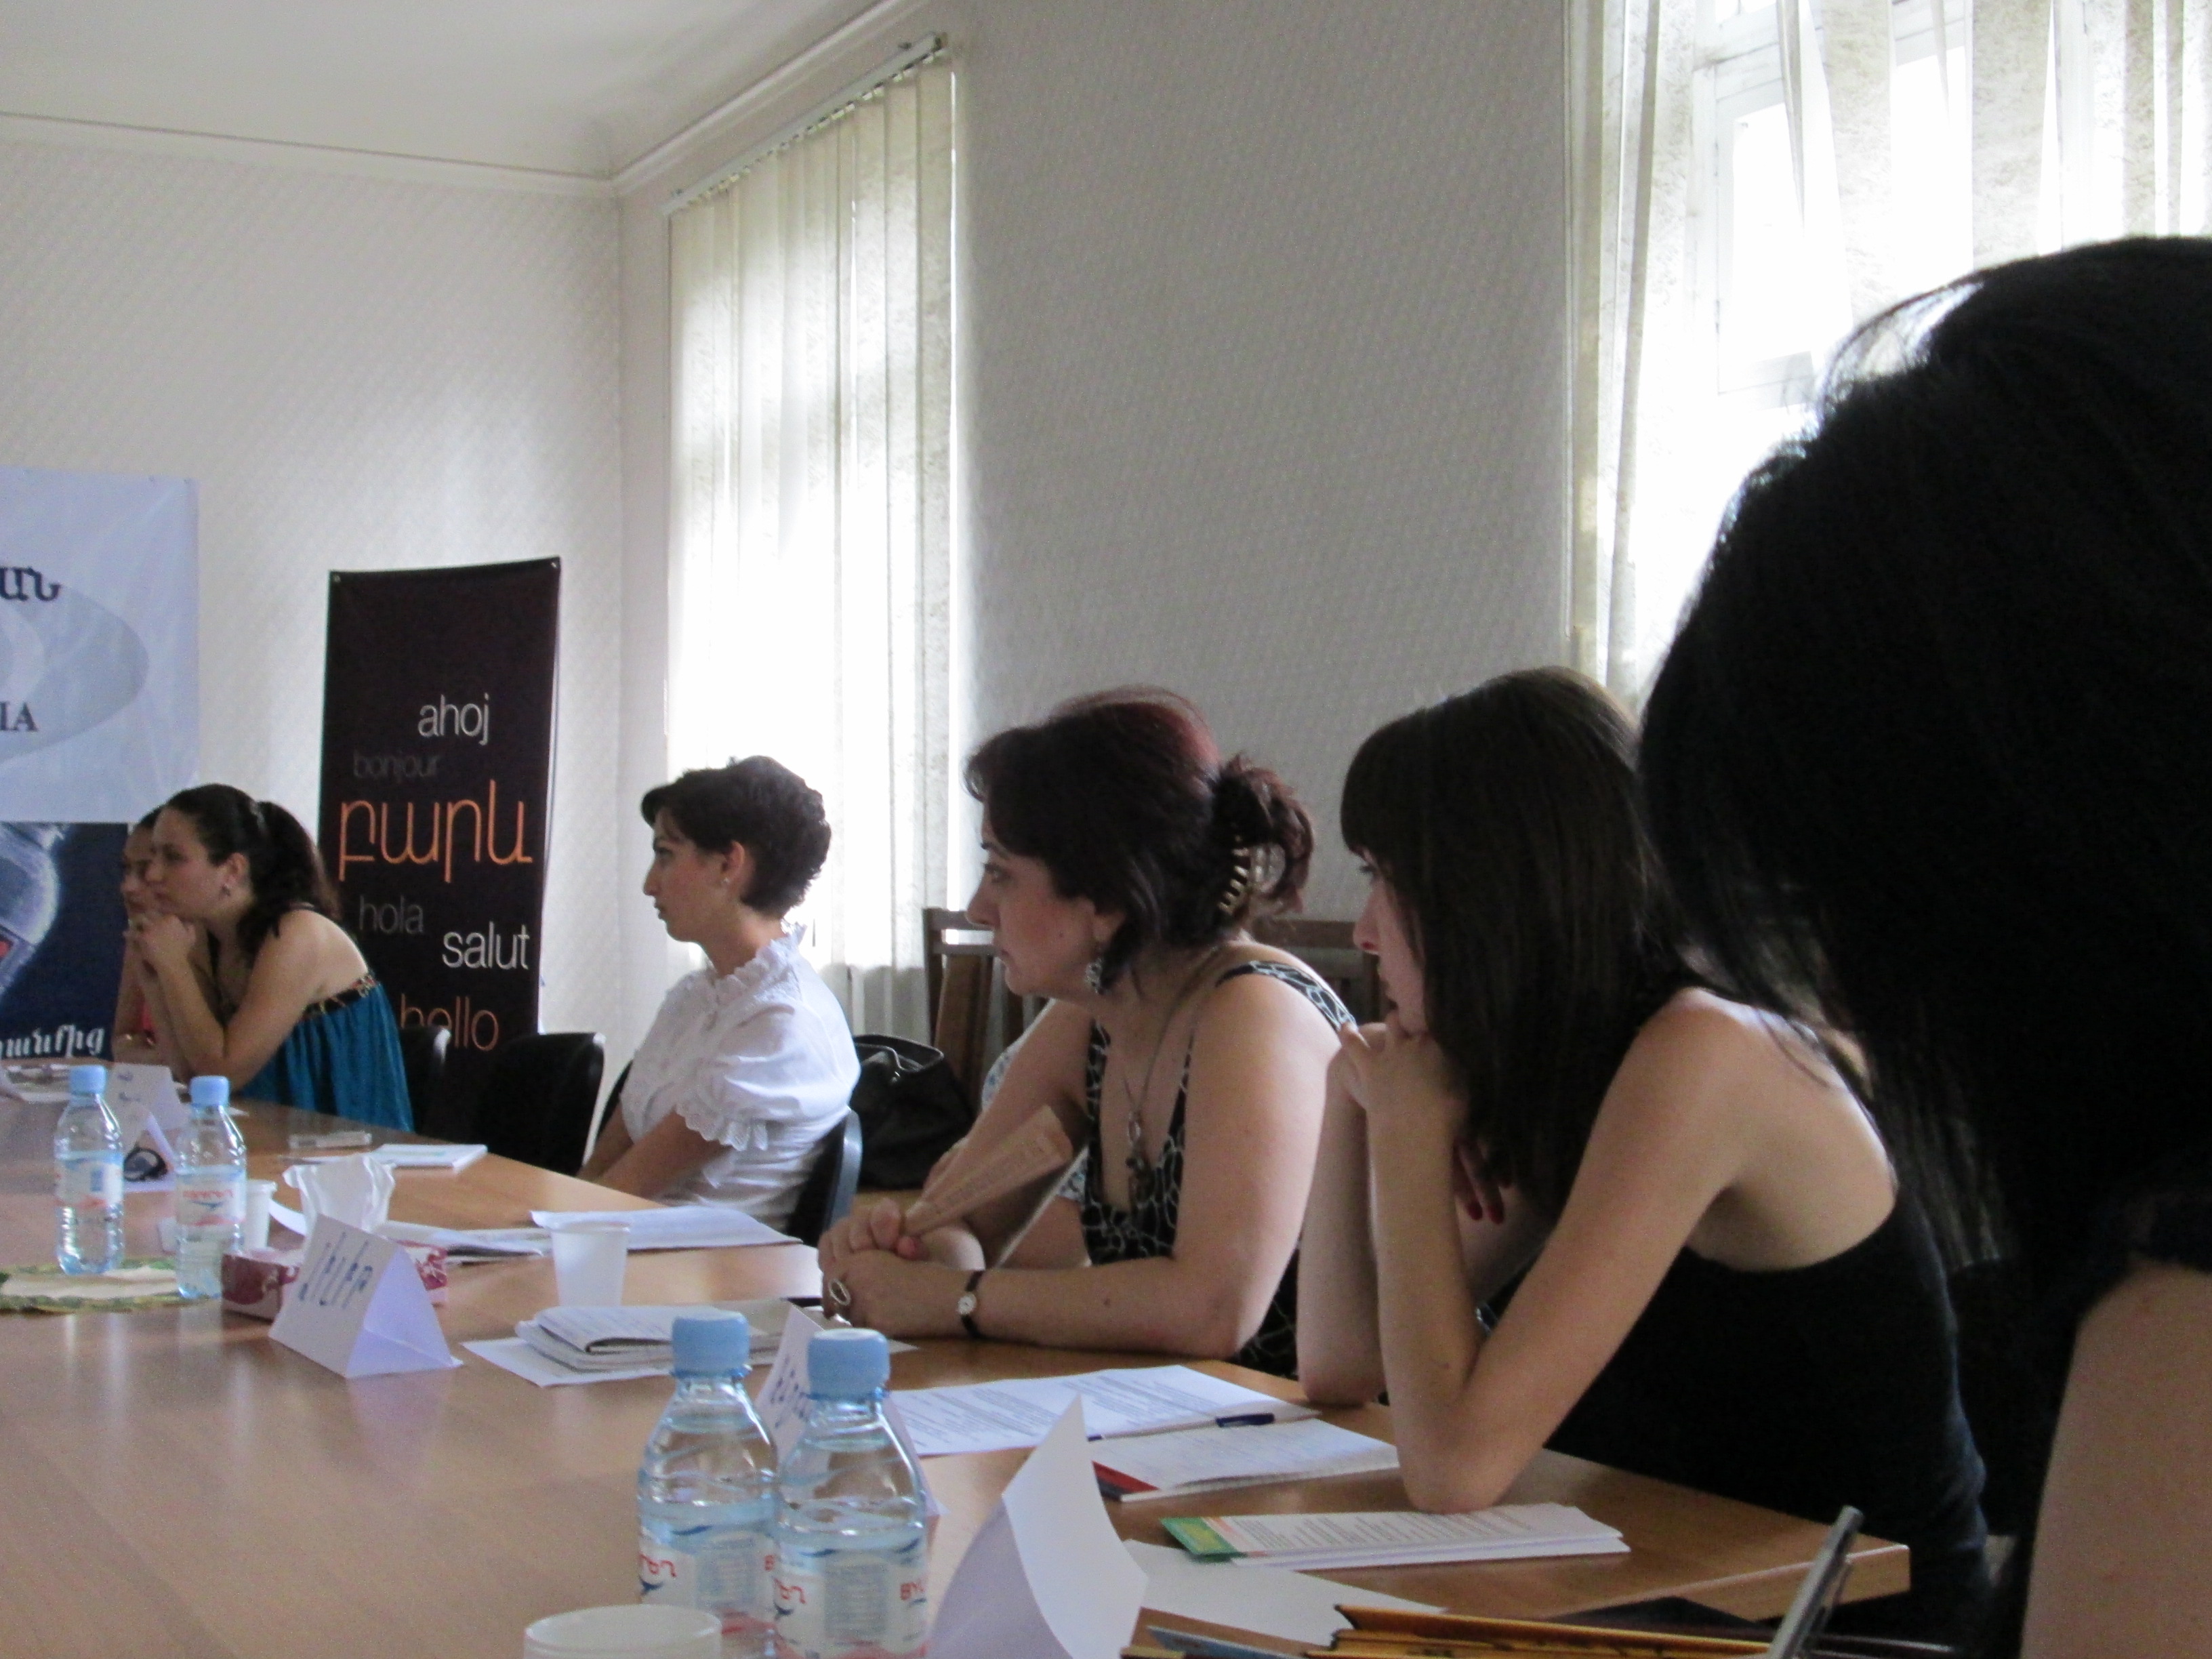 Հանդիպում Հայաստանի գործատուների հանրապետական միությունում ` Կանանց ձեռներեցության զարգացման ծրագրի շրջանակներում  